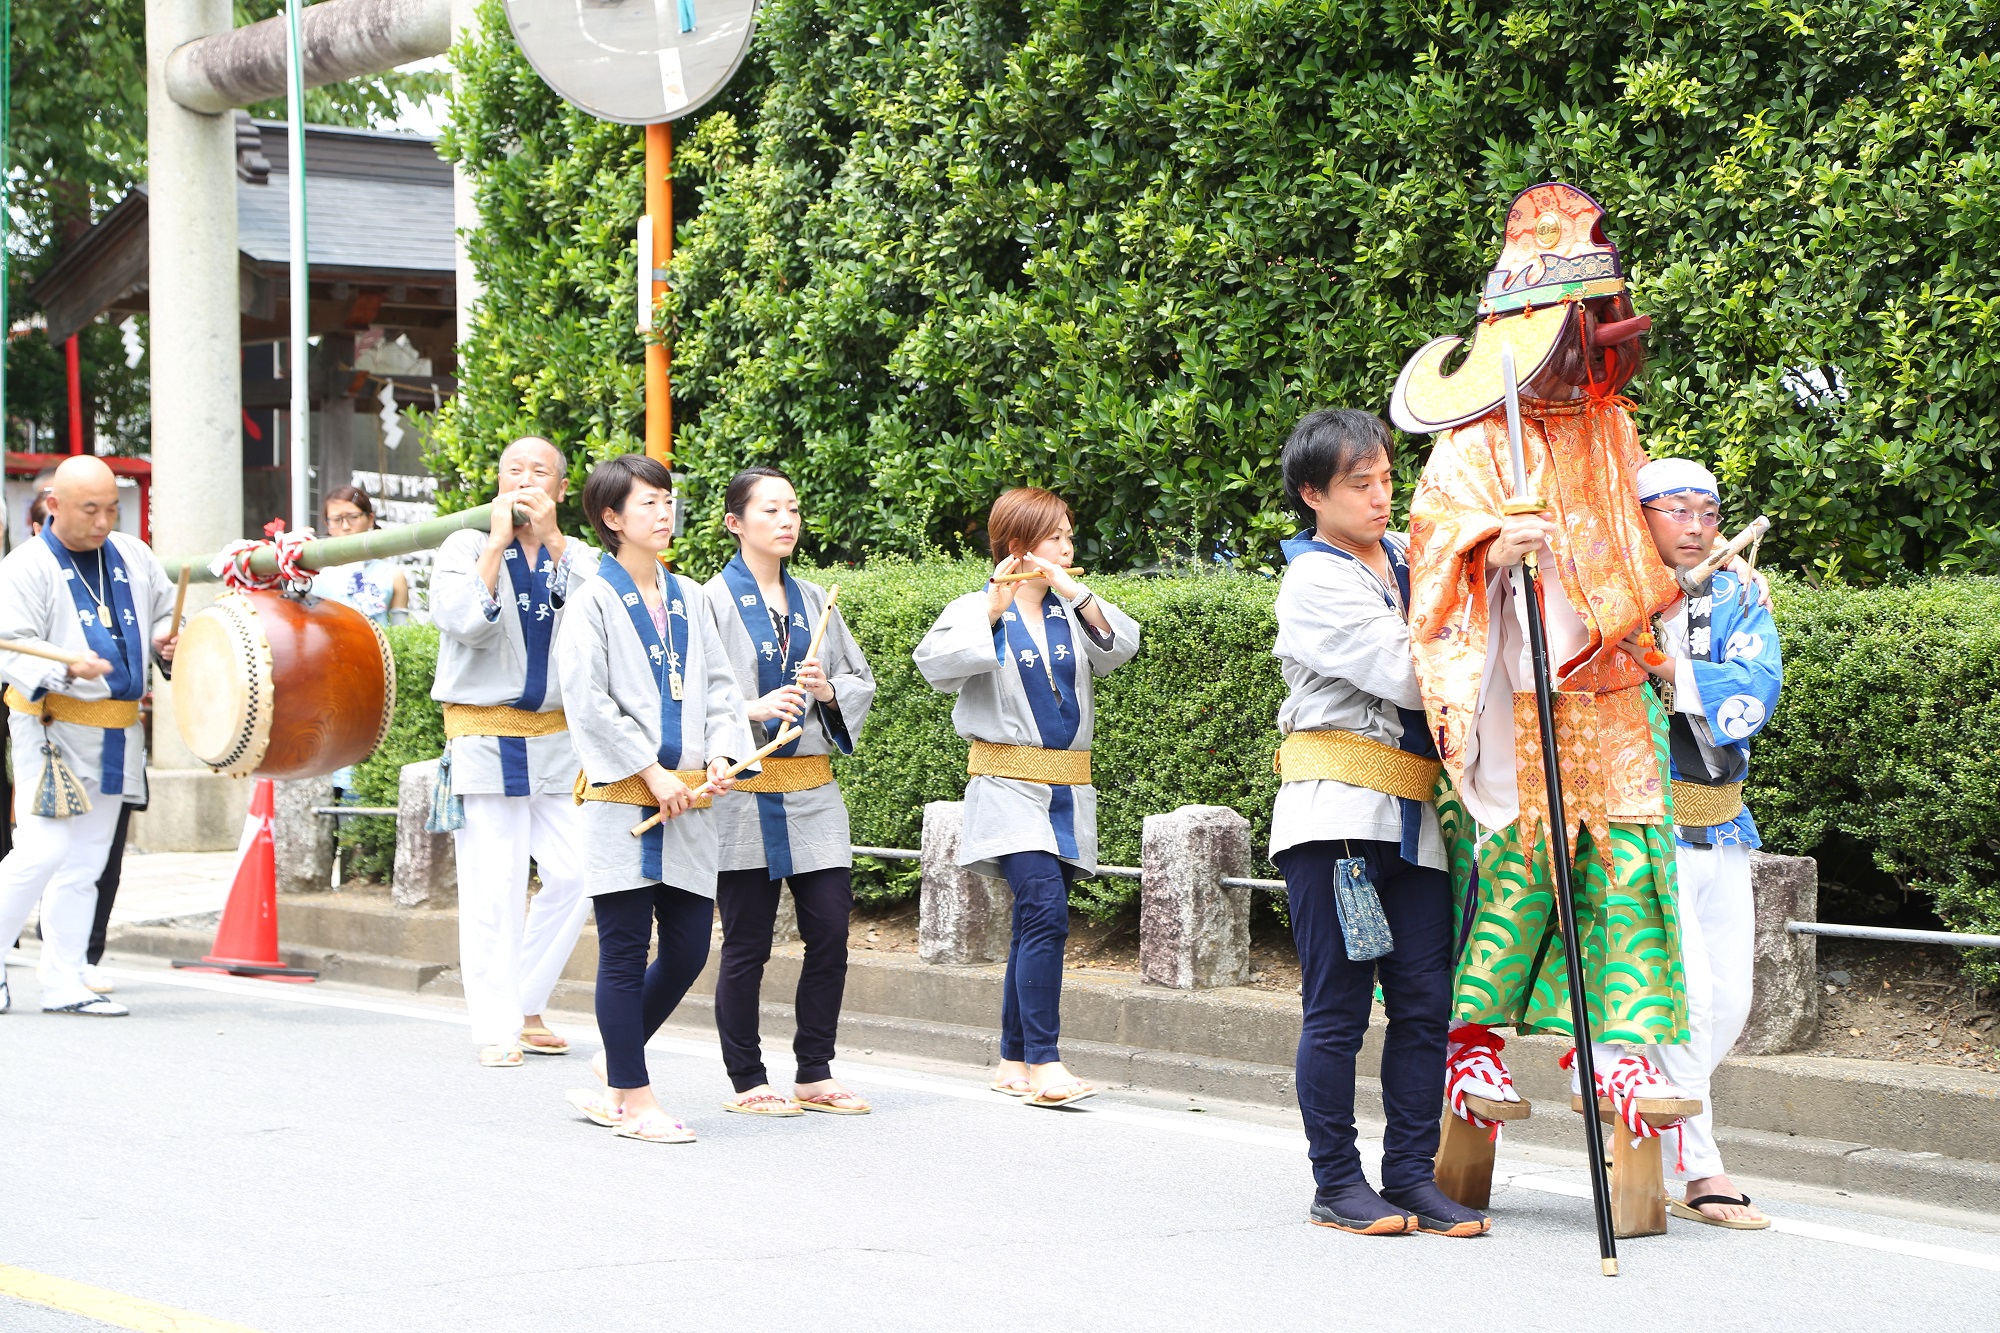 The Mashiko Gion Festival